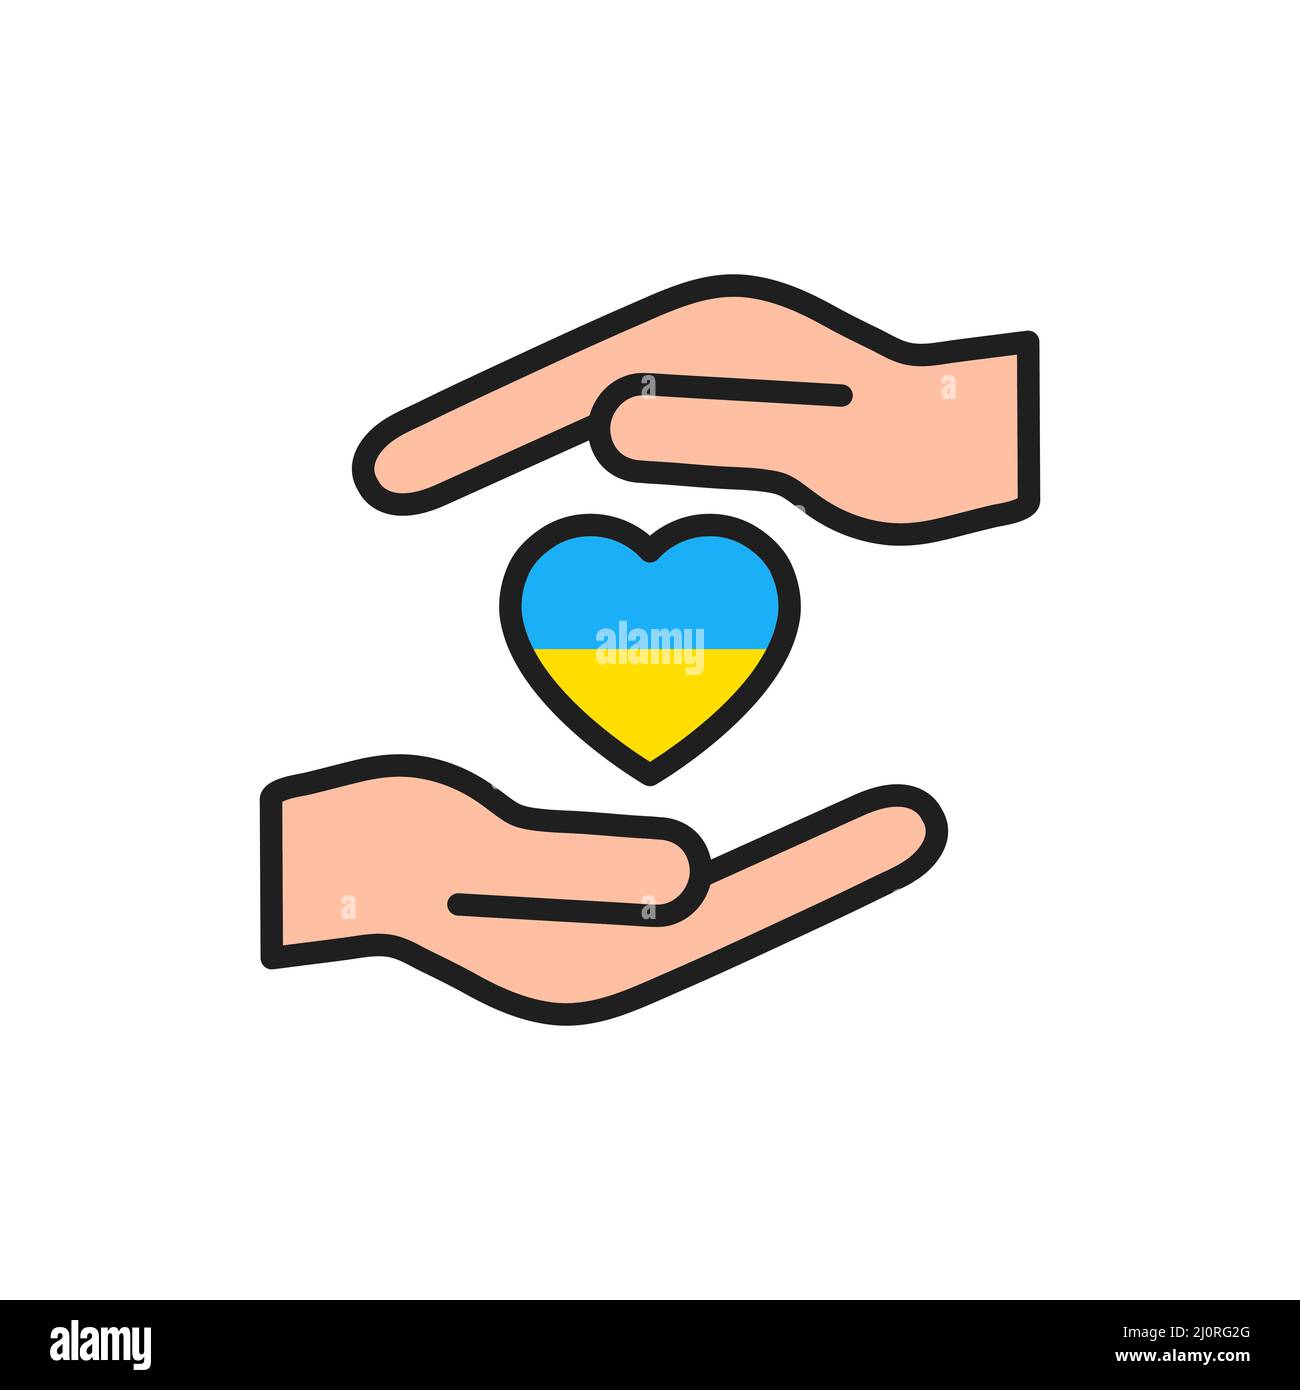 Pregate per la pace in Ucraina. Fermare la guerra. Bandiera dell'Ucraina in forma di cuore nelle armi umane. Illustrazione Vettoriale